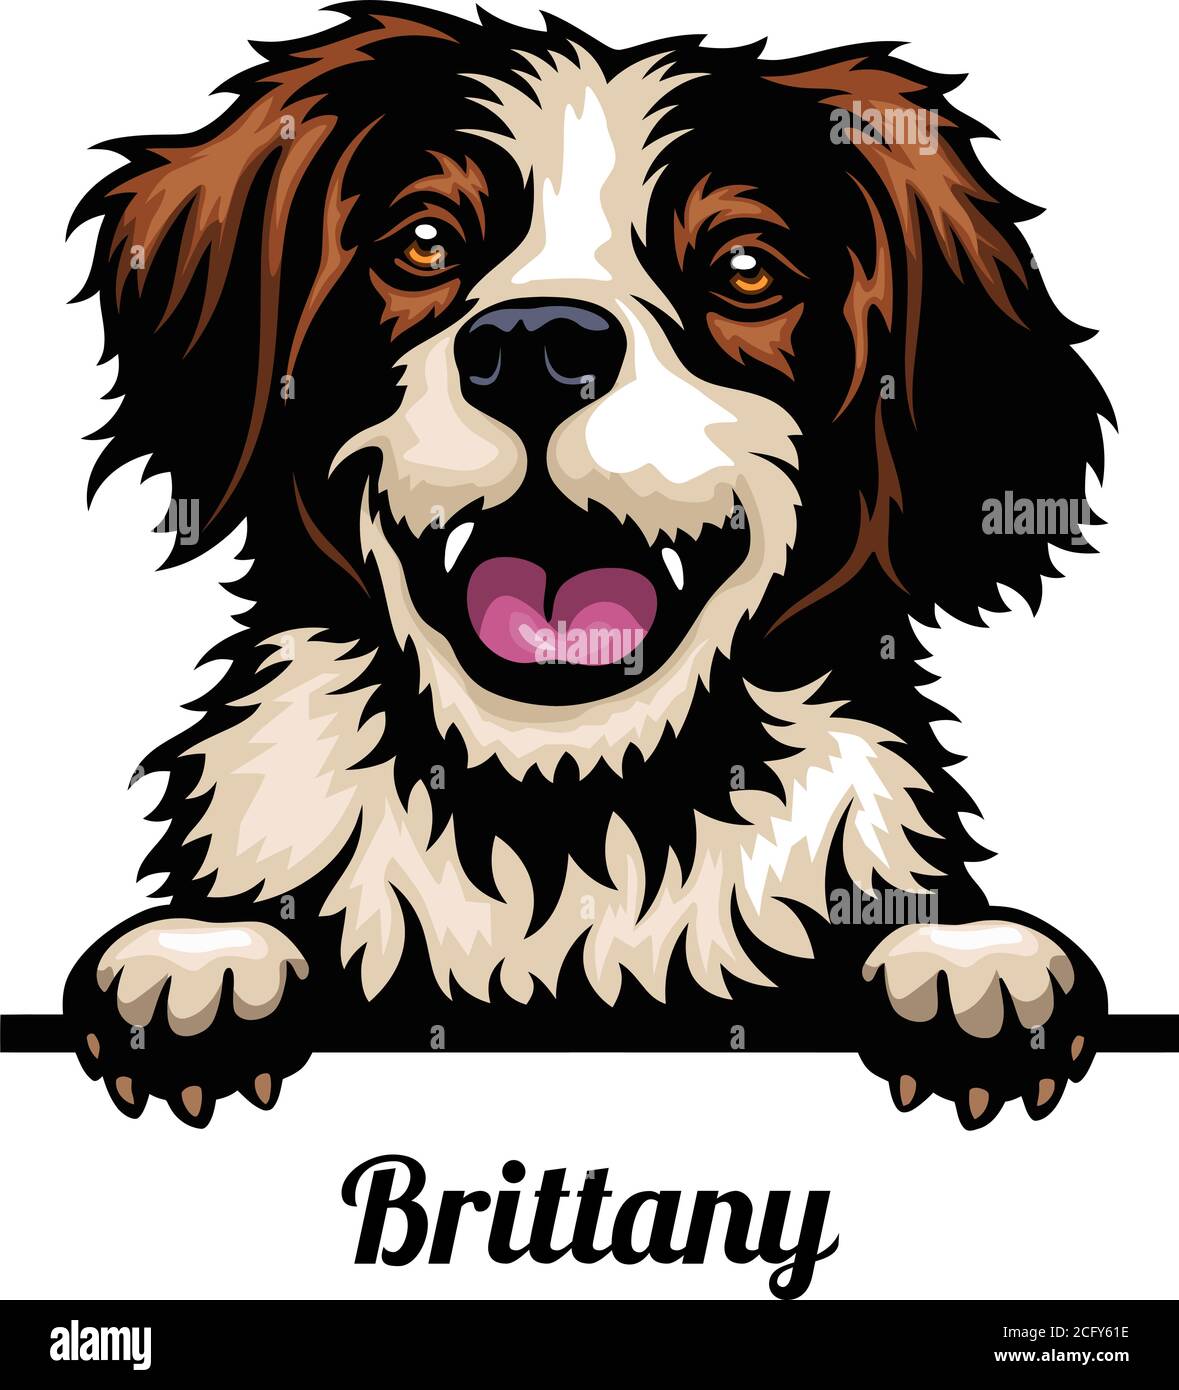 Capo Bretagna - razza del cane. Immagine a colori di una testa di cani isolata su uno sfondo bianco Illustrazione Vettoriale